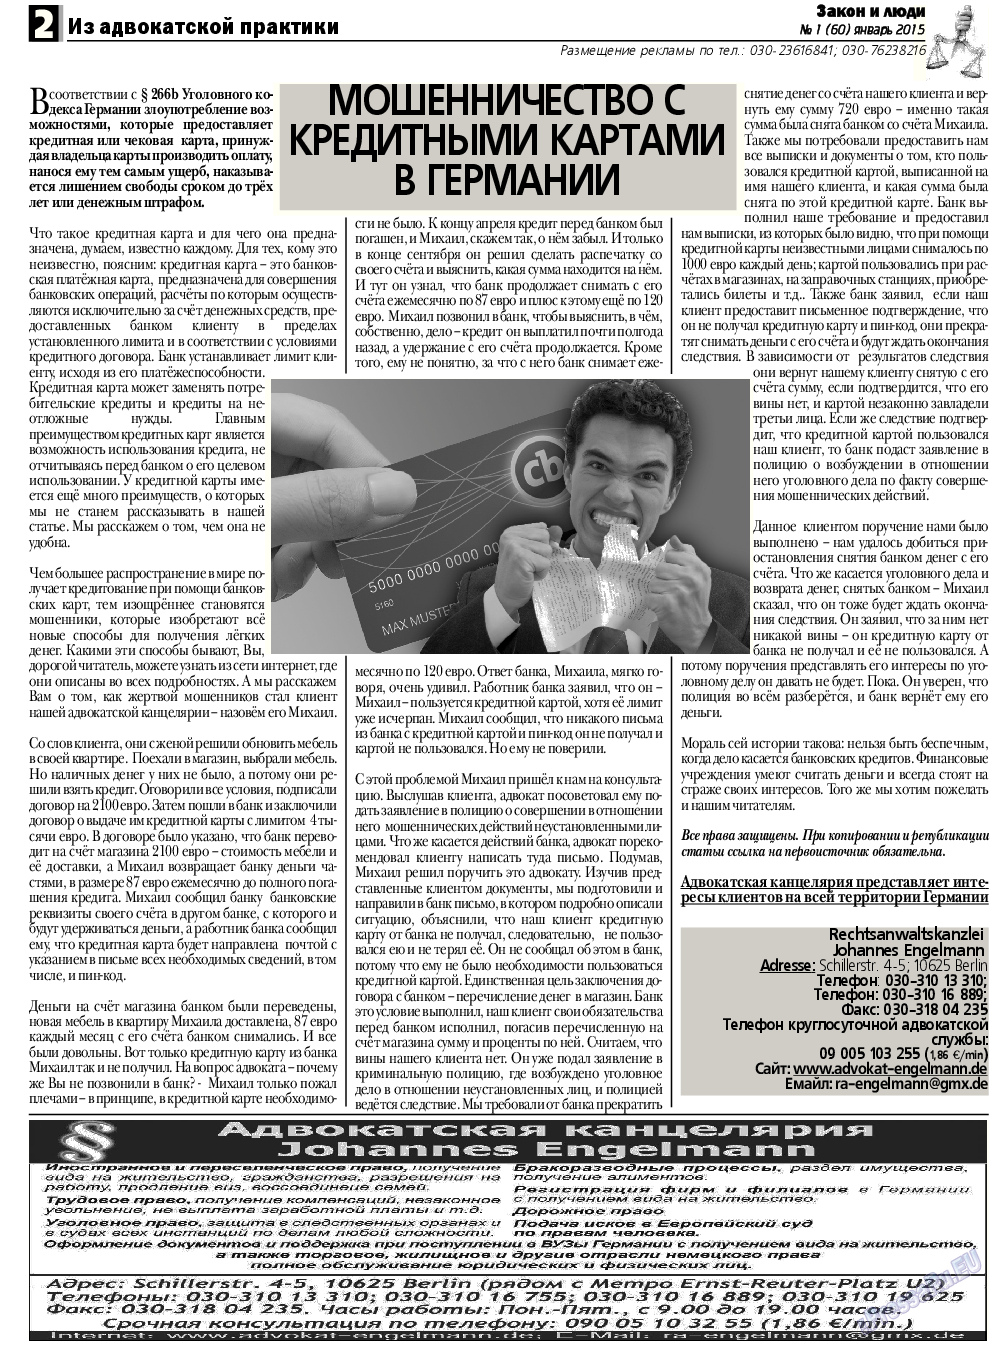 Закон и люди, газета. 2015 №1 стр.2